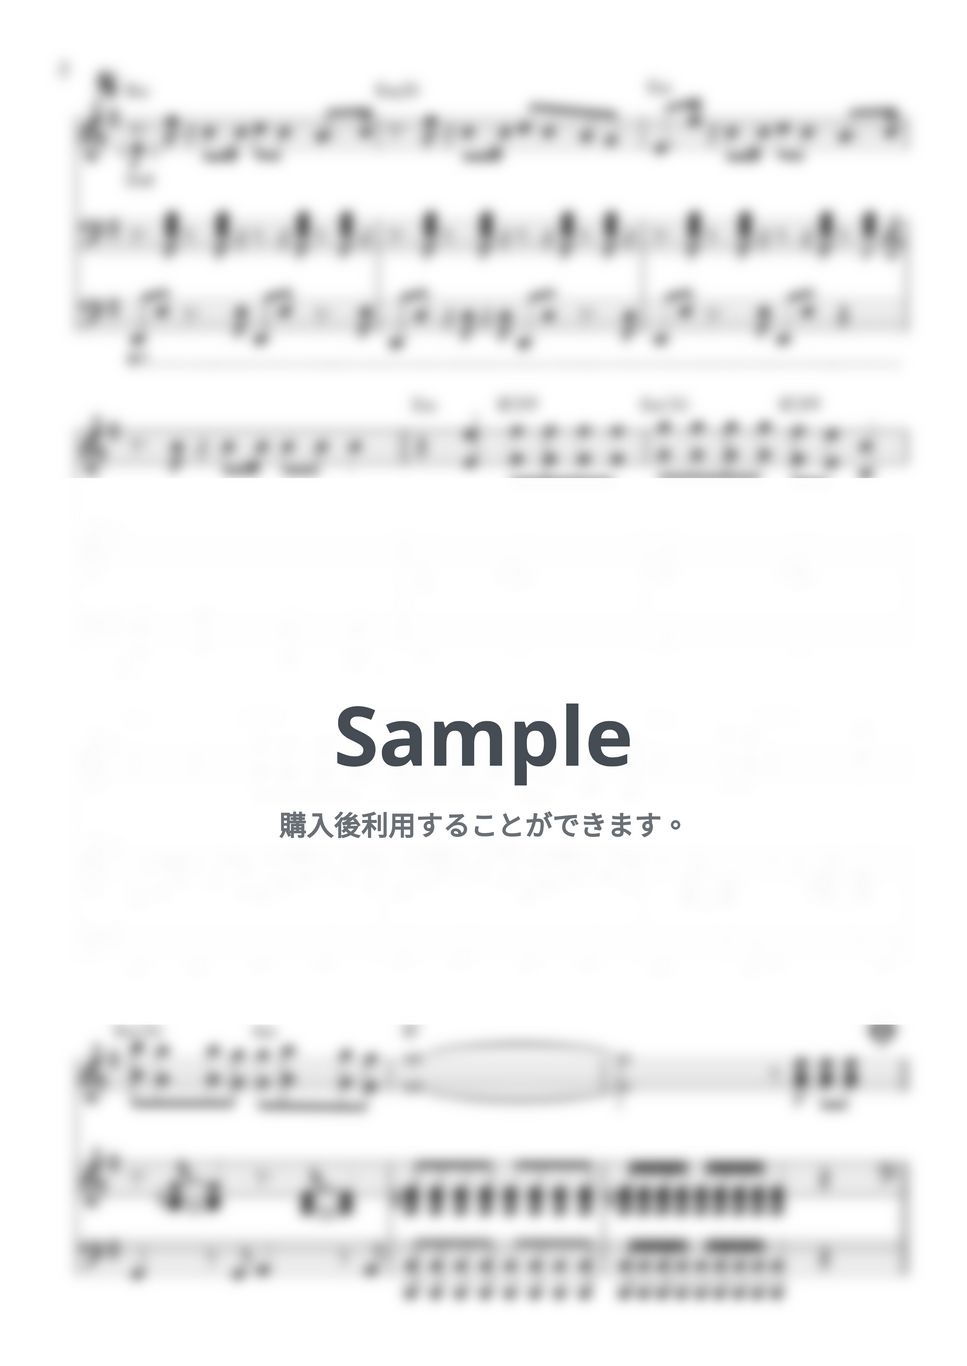 Kang Daniel - Who U Are (Piano Duo) by 247KpopPiano